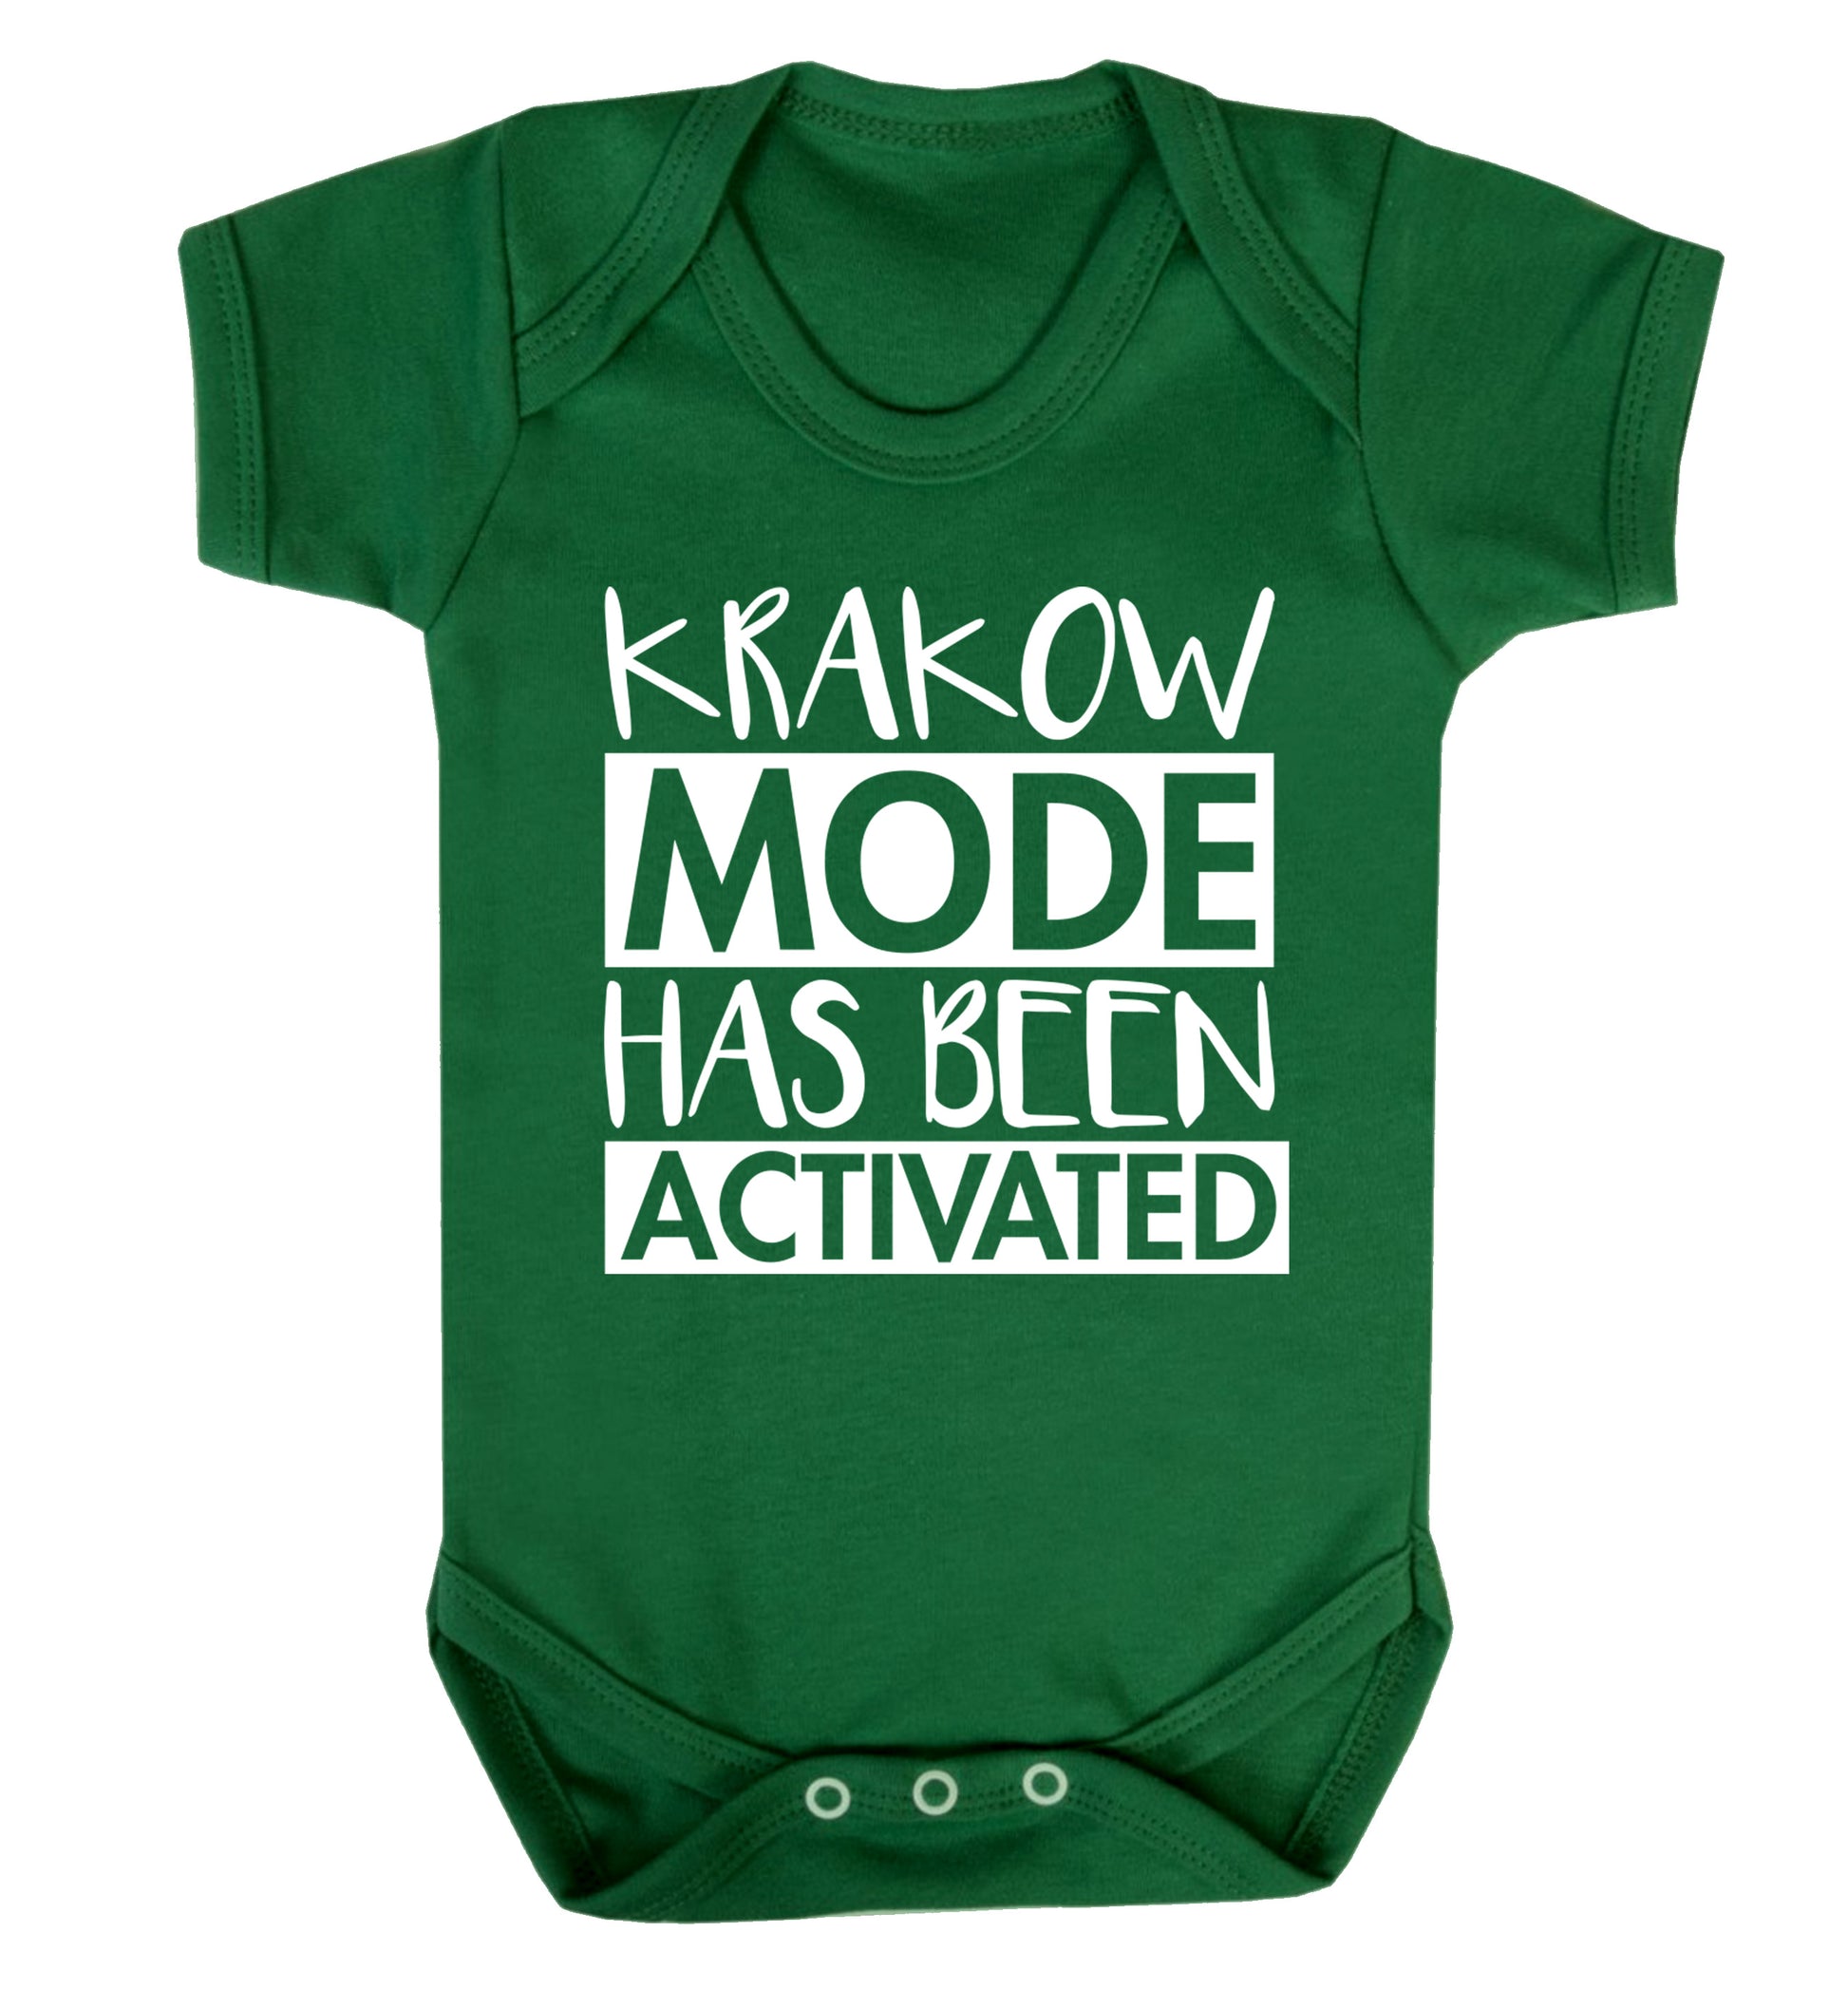 Krakow mode has been activated Baby Vest green 18-24 months